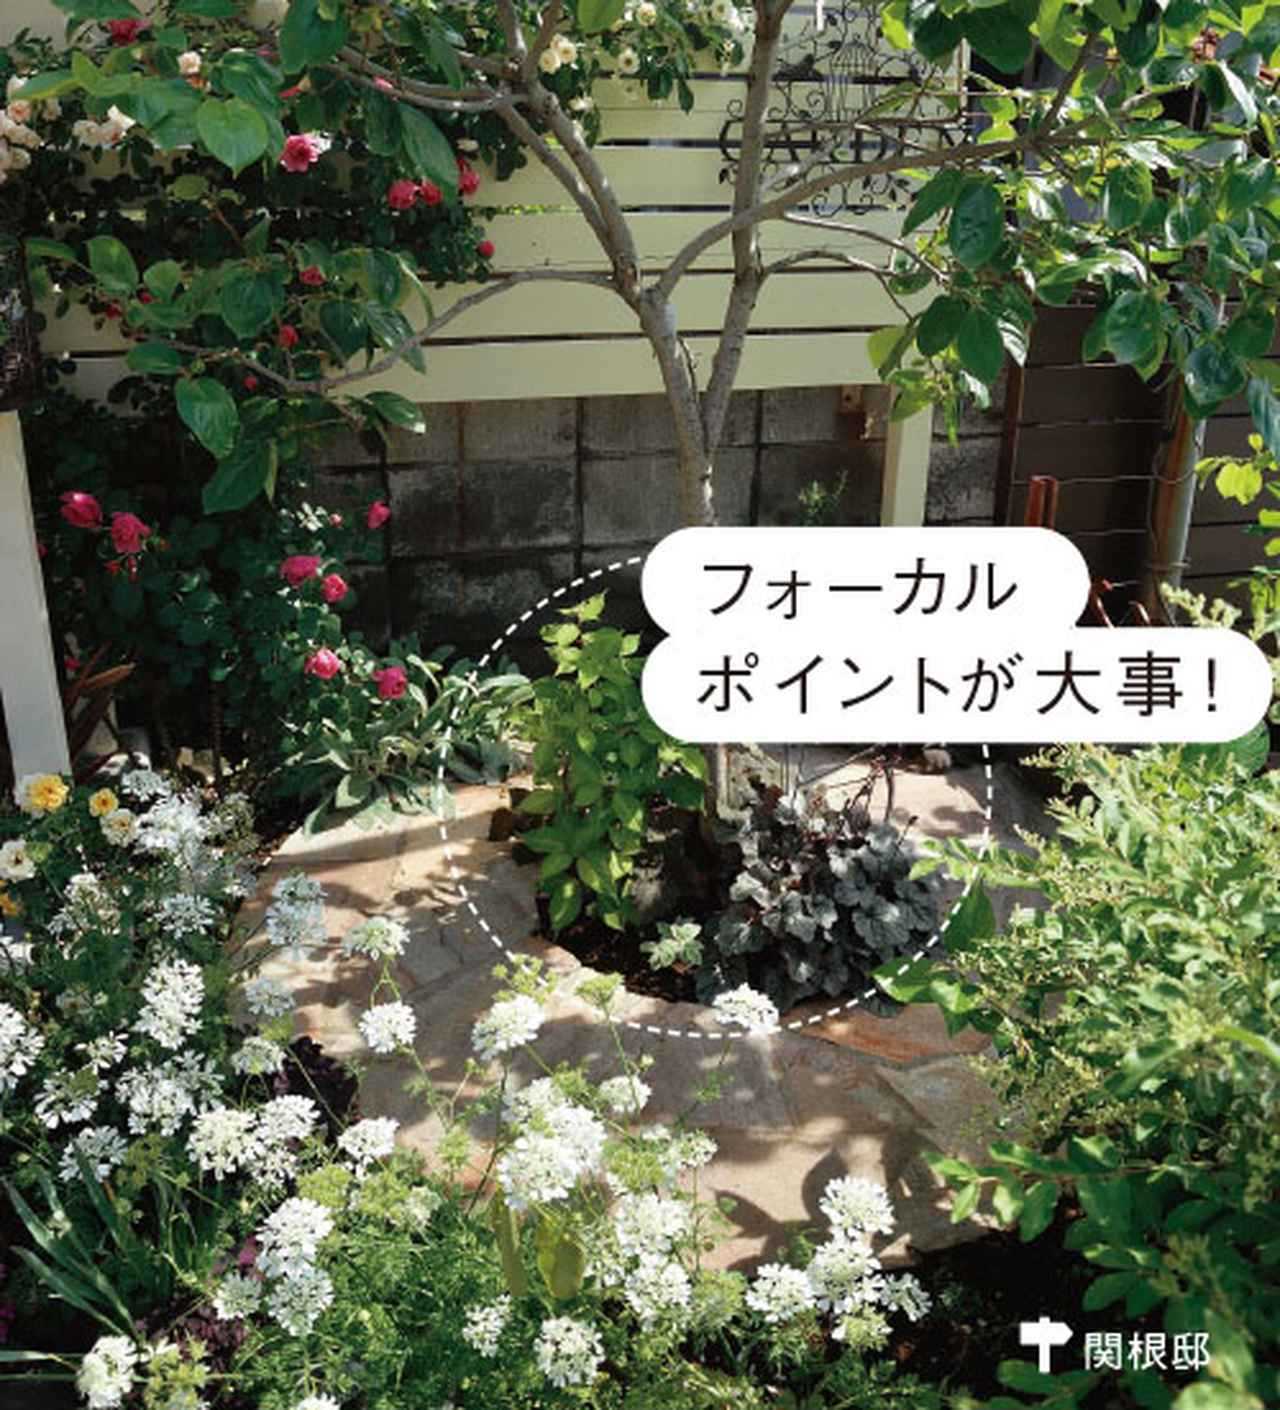 画像2: ローメンテナンスの庭の実例 植栽スペースを限定した手間をかけない庭づくり